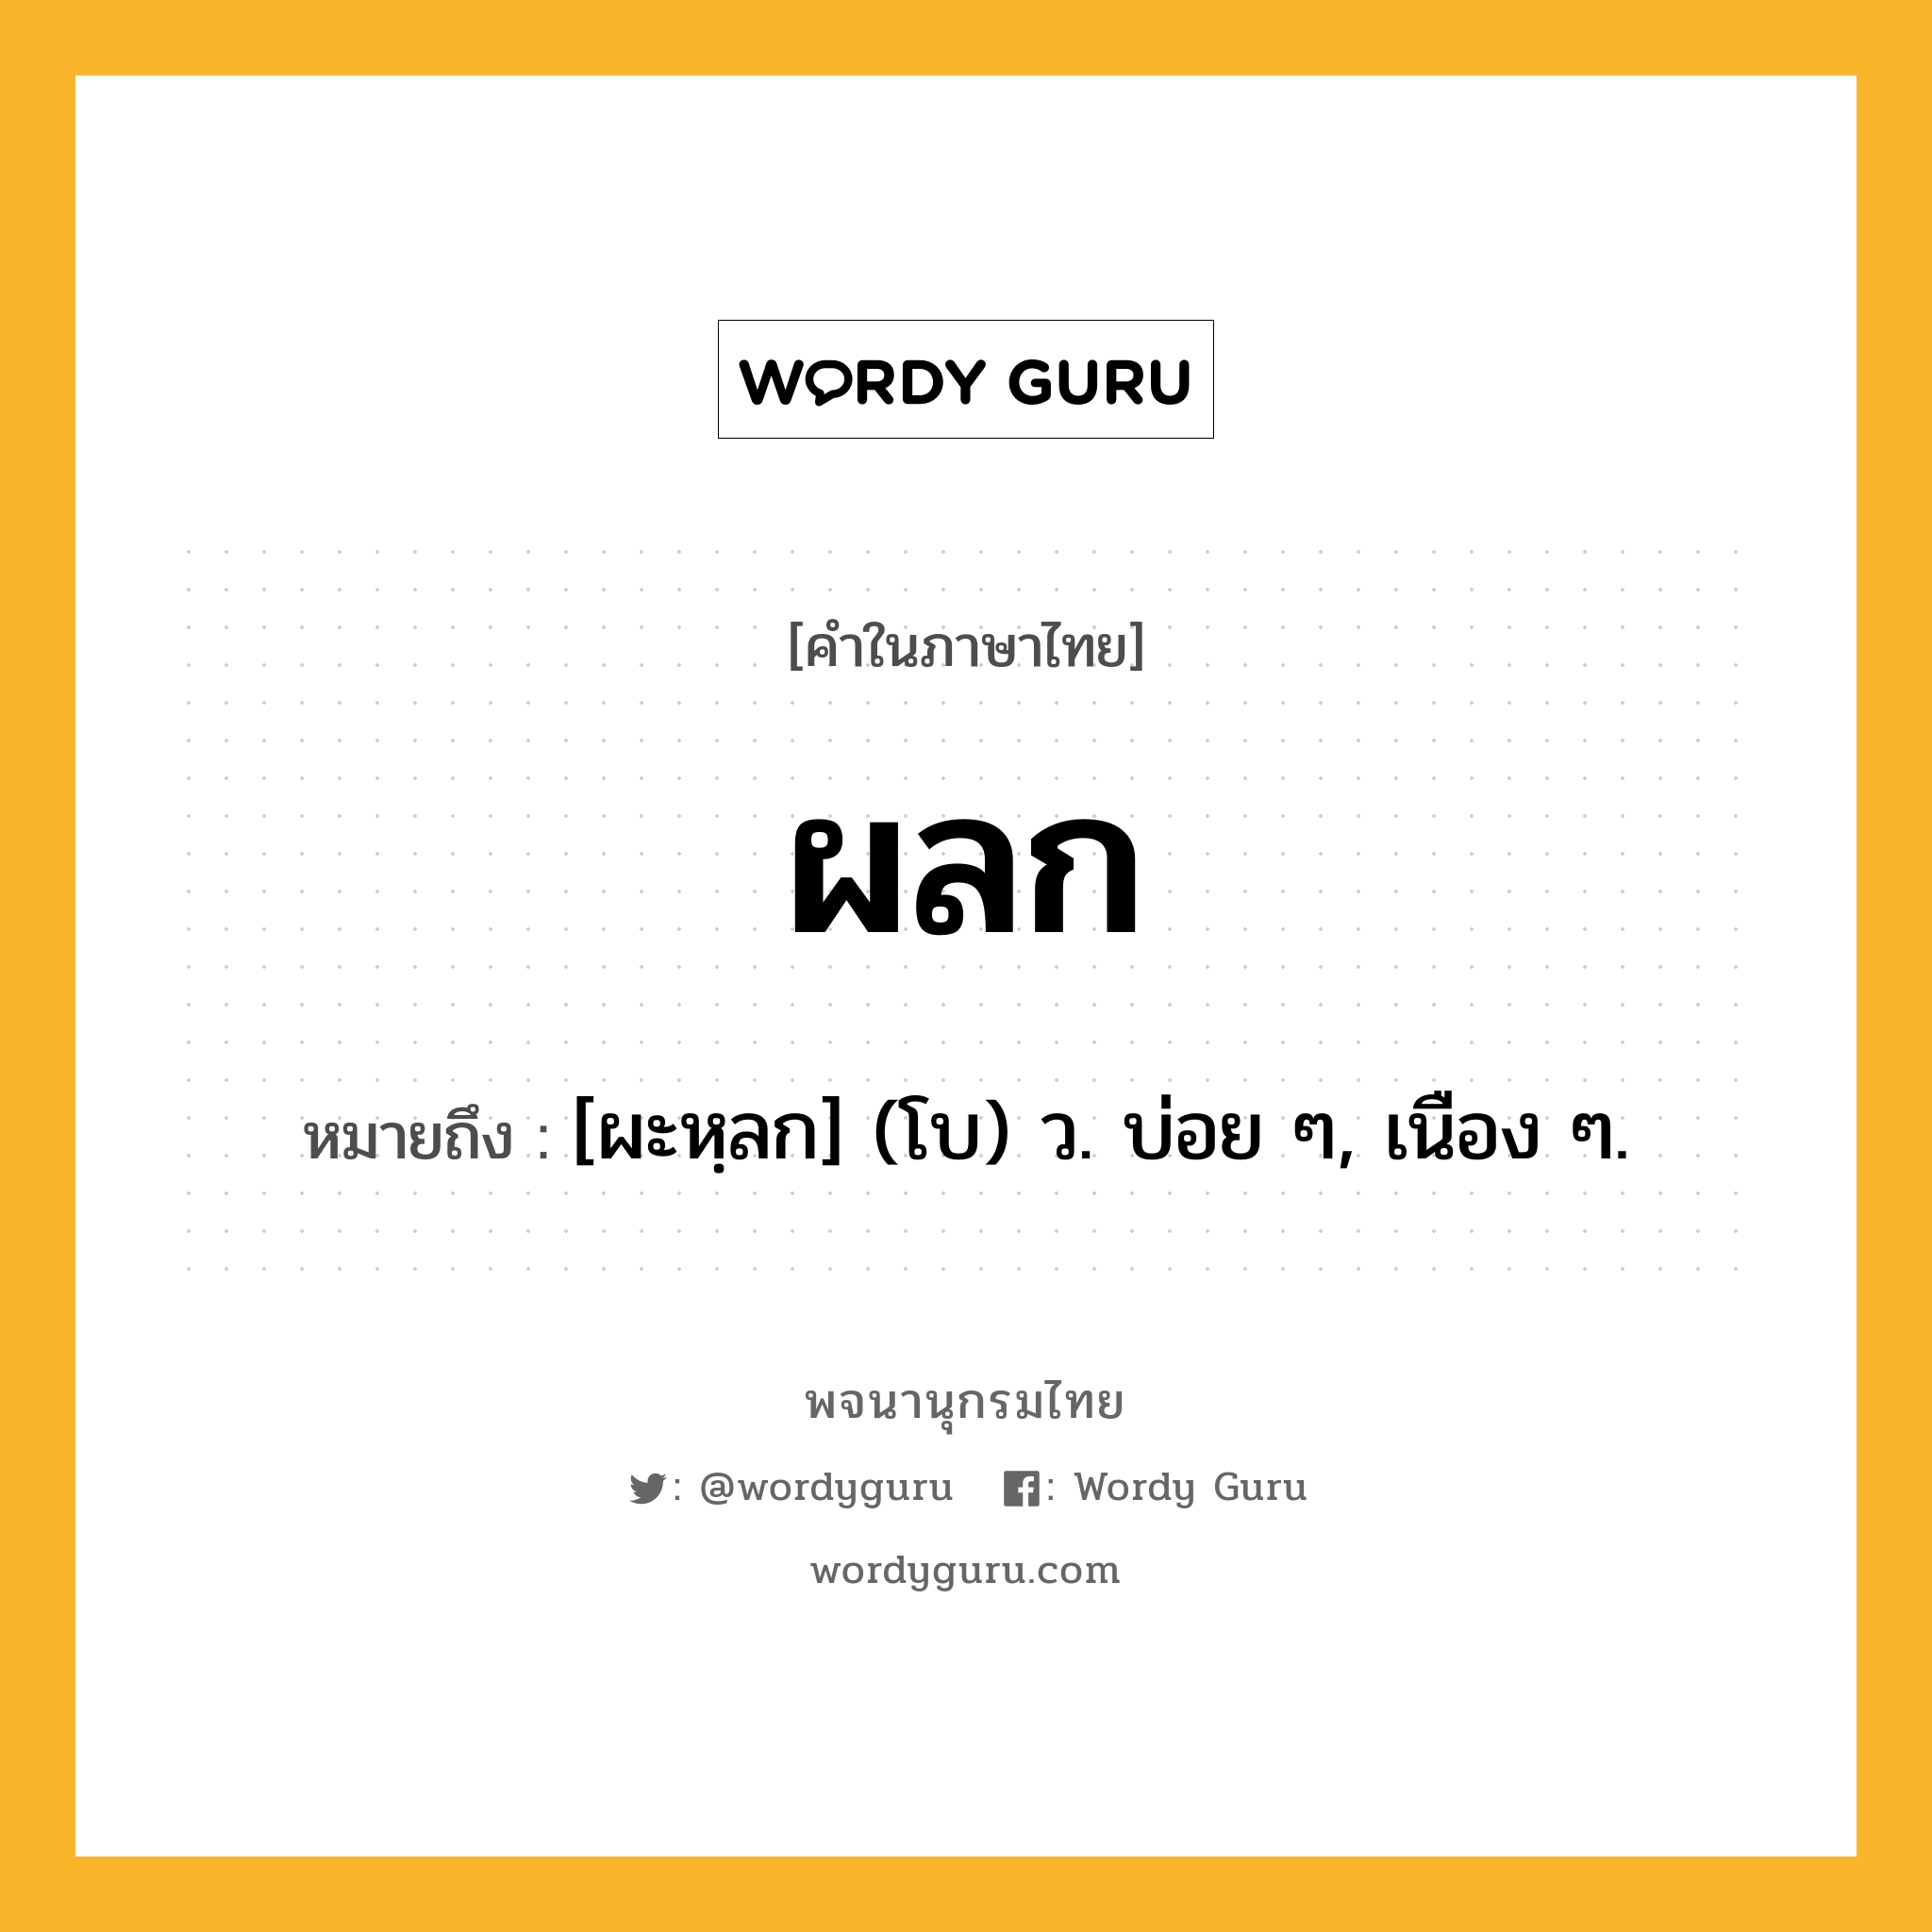 ผลก ความหมาย หมายถึงอะไร?, คำในภาษาไทย ผลก หมายถึง [ผะหฺลก] (โบ) ว. บ่อย ๆ, เนือง ๆ.